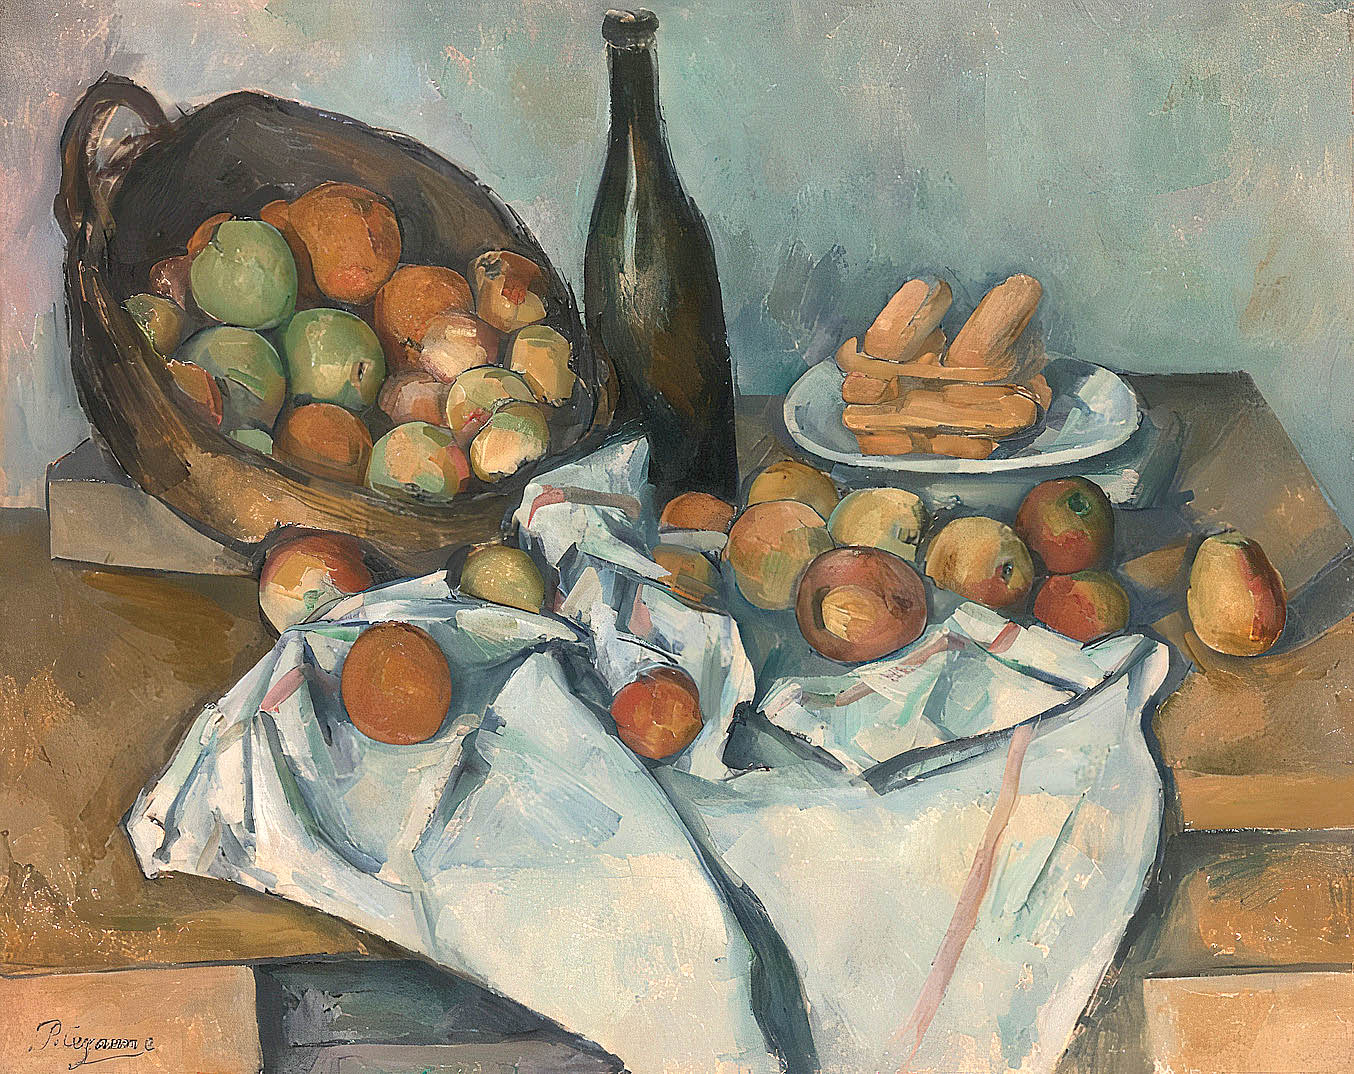 The Ey Exhibition: Cézanne